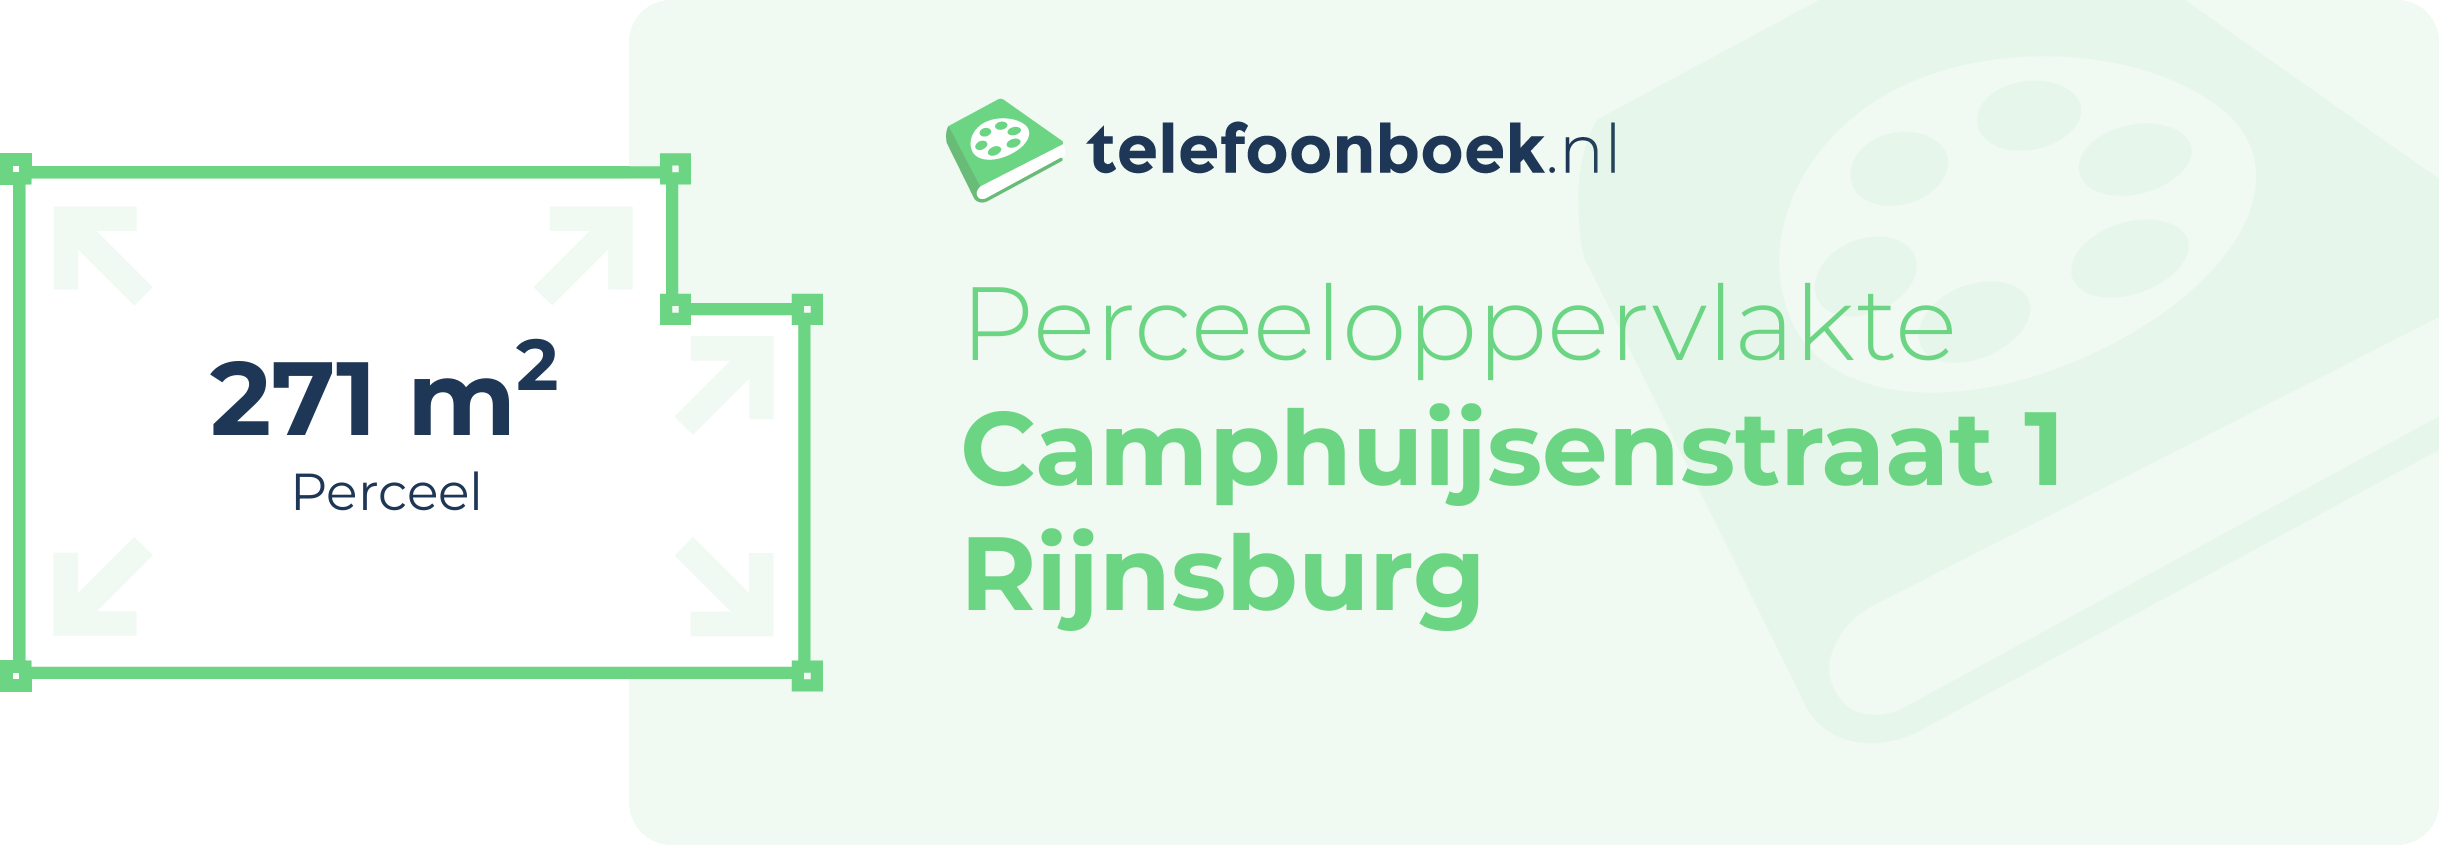 Perceeloppervlakte Camphuijsenstraat 1 Rijnsburg